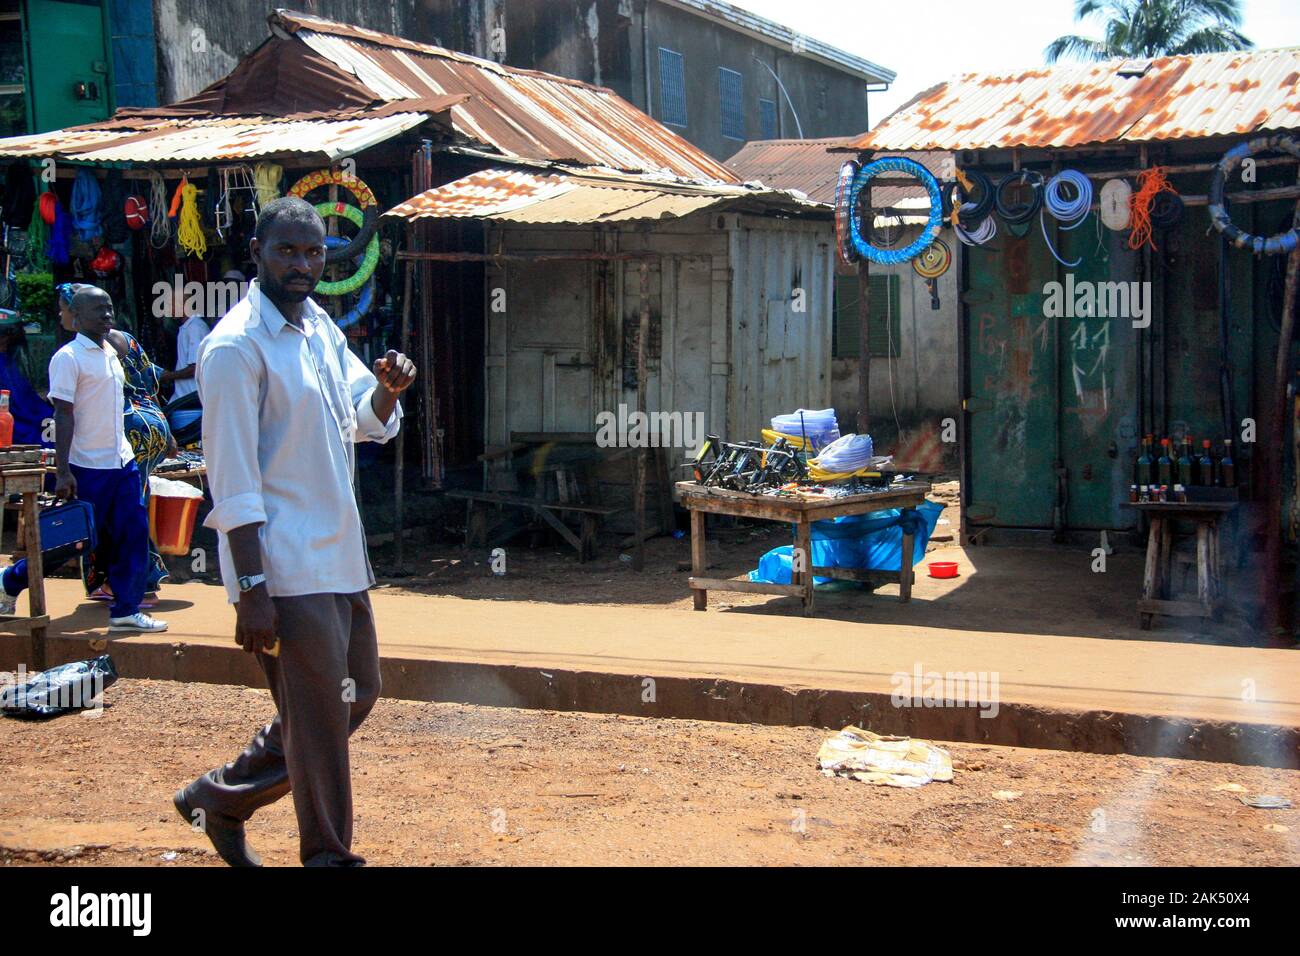 Afrikanischer Mann, der auf der Hauptstraße in Conakry, Guinea, Westafrika, vorbei an Marktständen und einer Tankstelle mit Treibstoff in Glasflaschen unterwegs ist Stockfoto